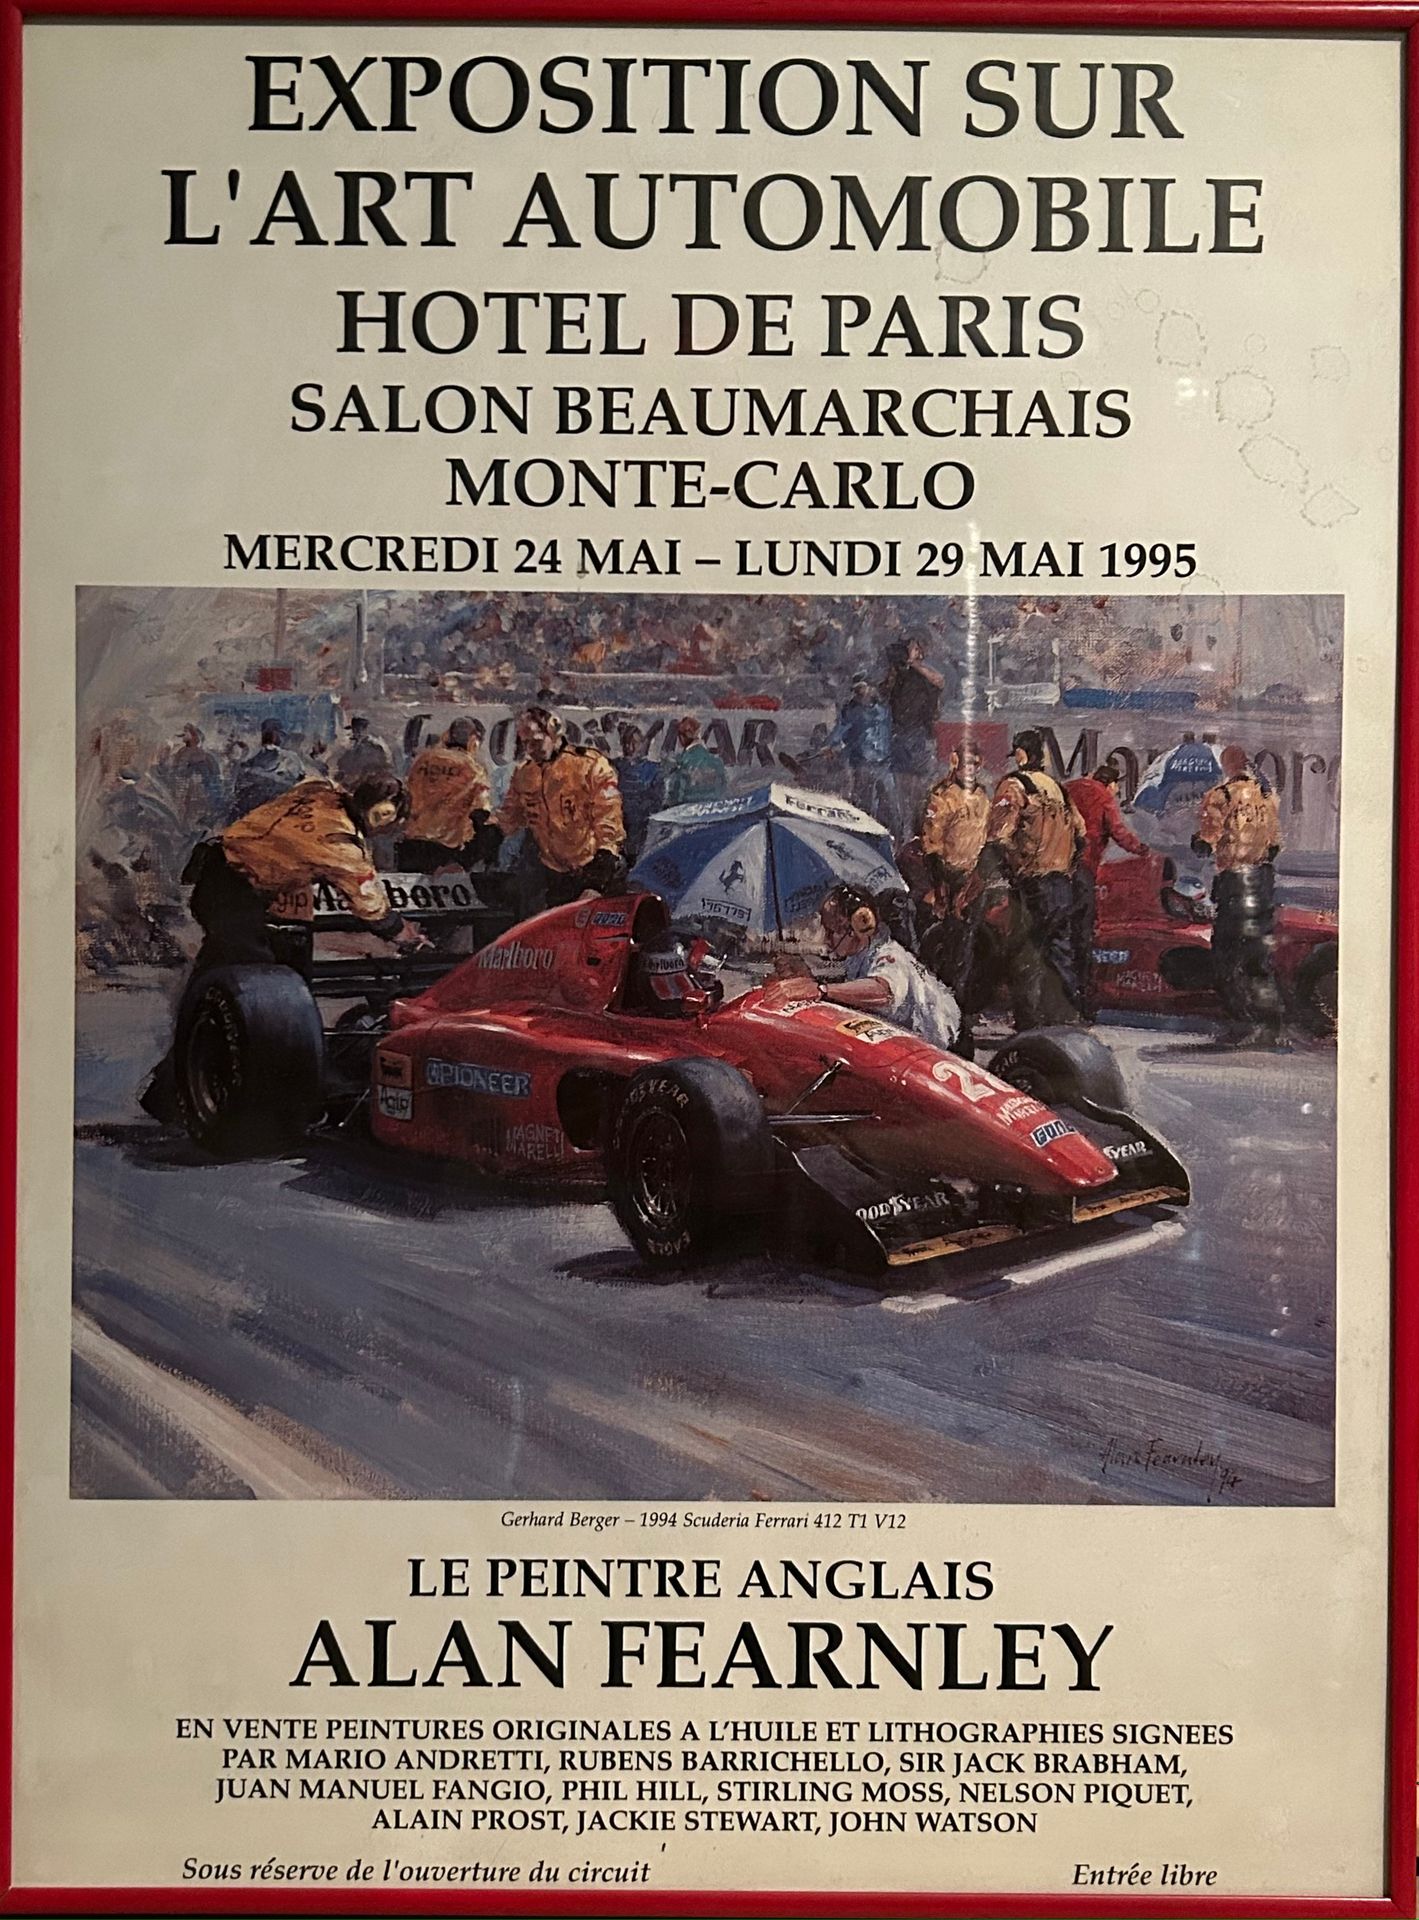 FEARNLEY FEARNLEY
Affiche de l'exposition sur l’Art Automobile à l'hôtel de Pari&hellip;